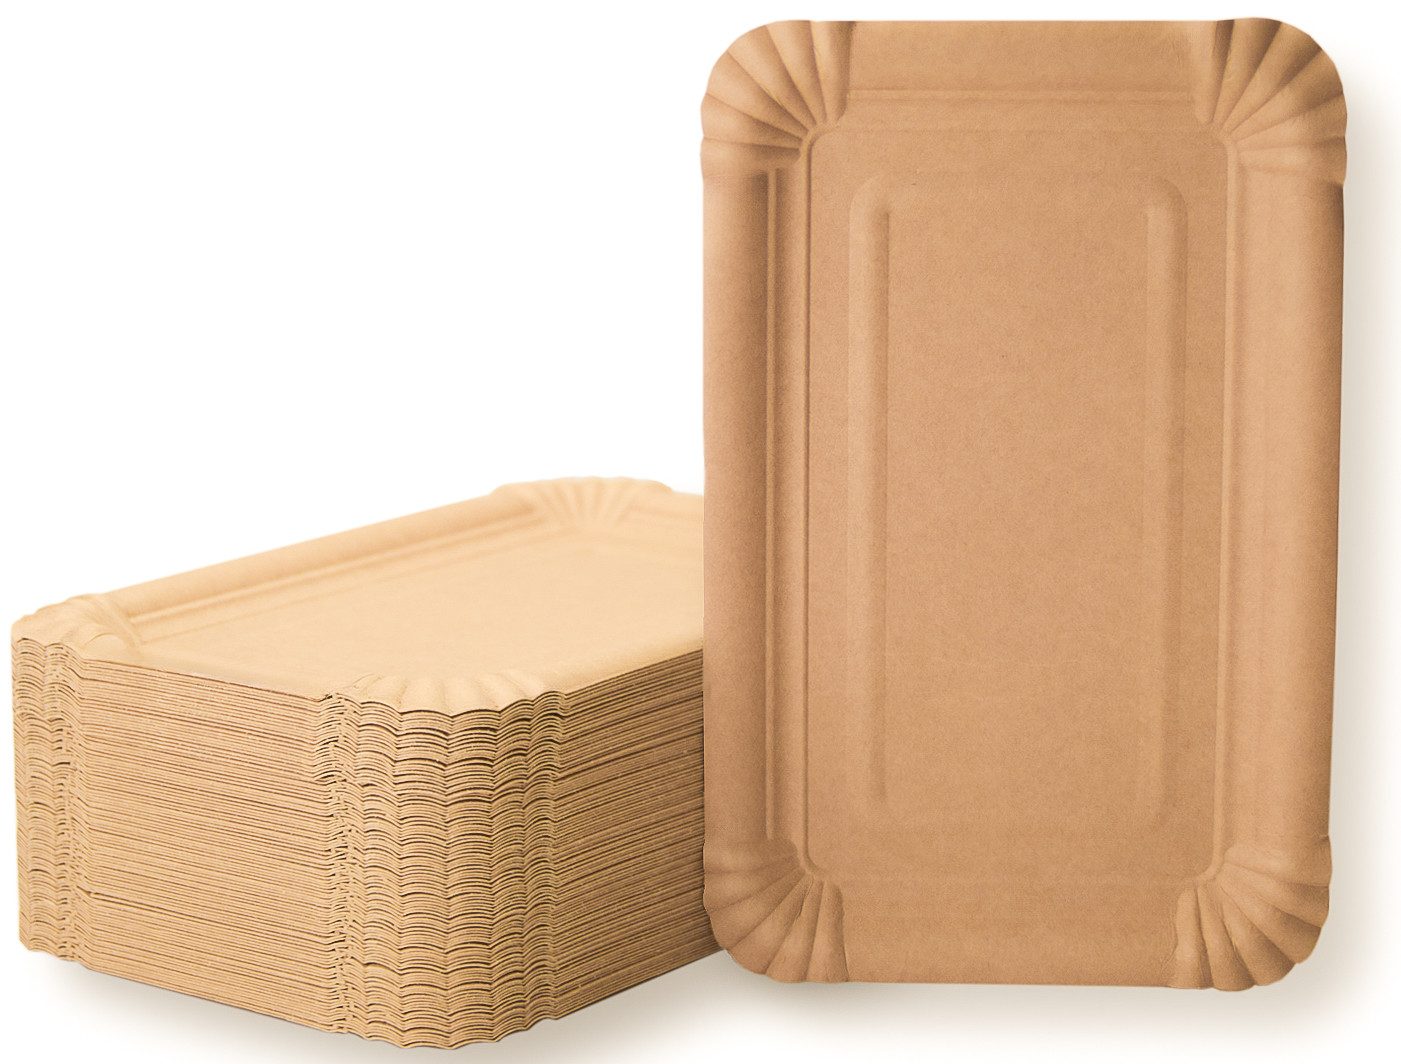 Vivopack Einwegteller Pappteller eckig 13x20cm, braun, Frischfaser, Einwegteller, (200 St), biologisch abbaubar, robustes Design, Frischfaser